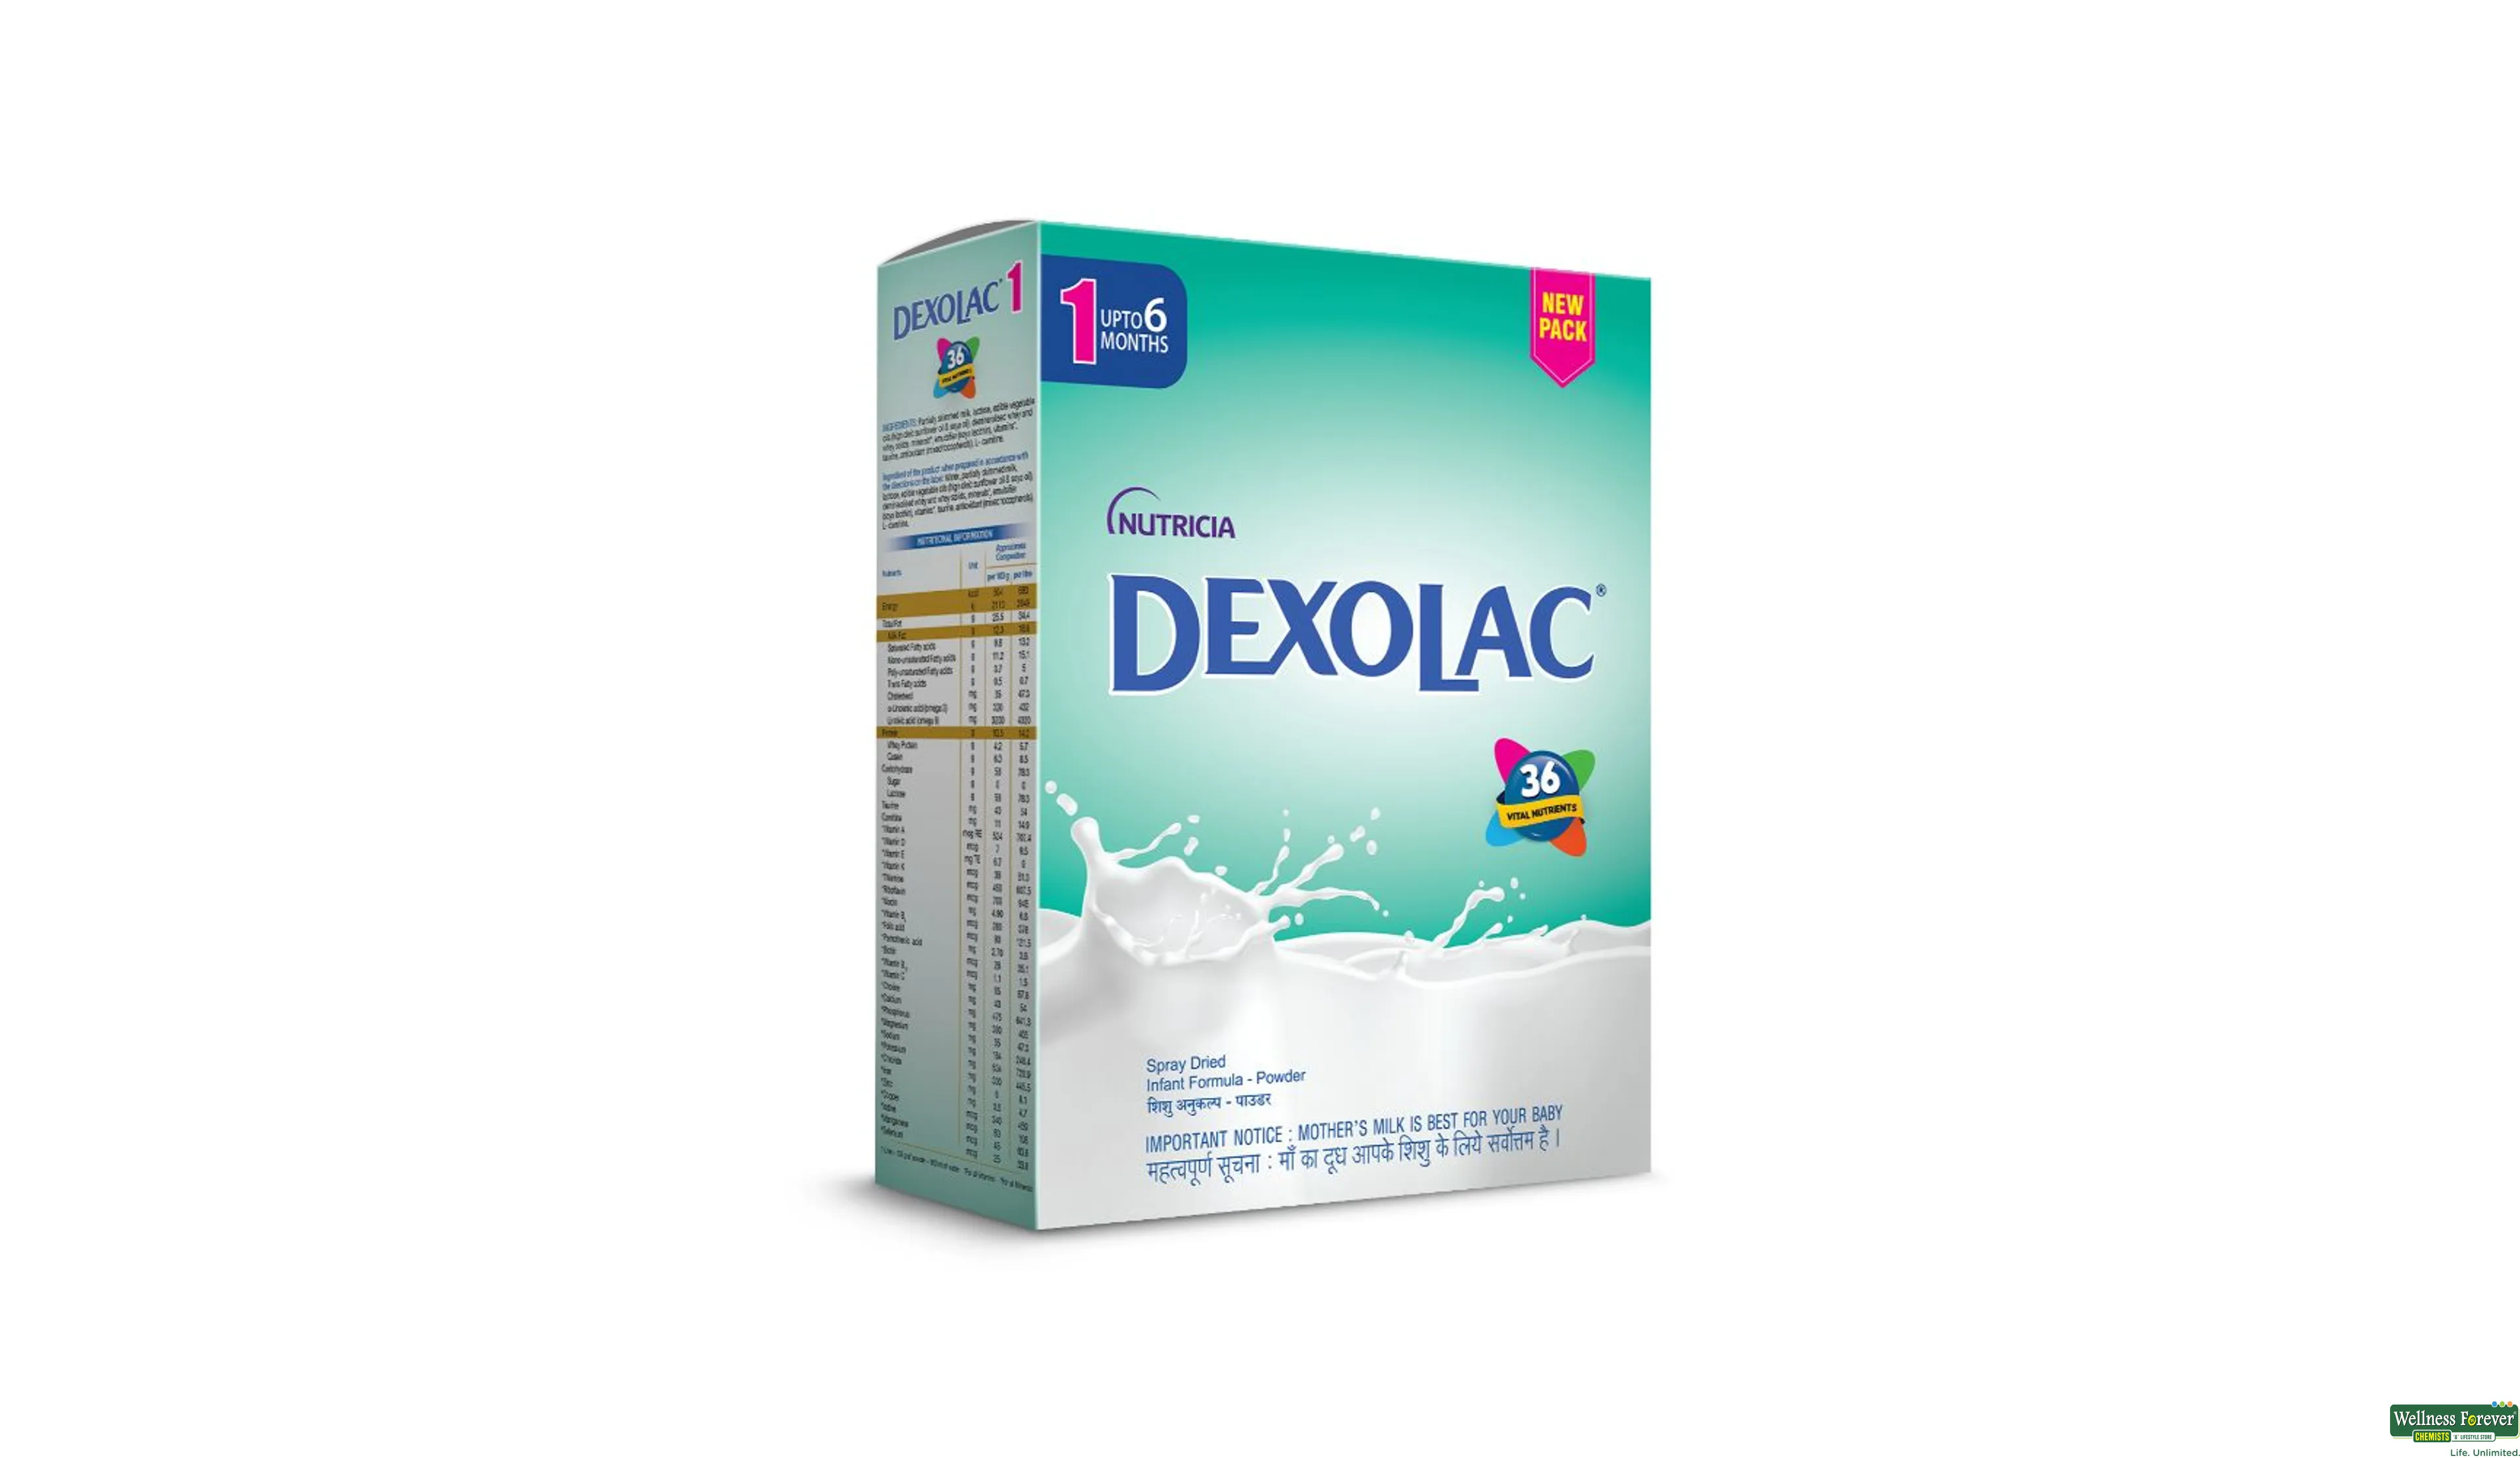 DEXOLAC 1 POW REF 400GM- 1, 400GM, 